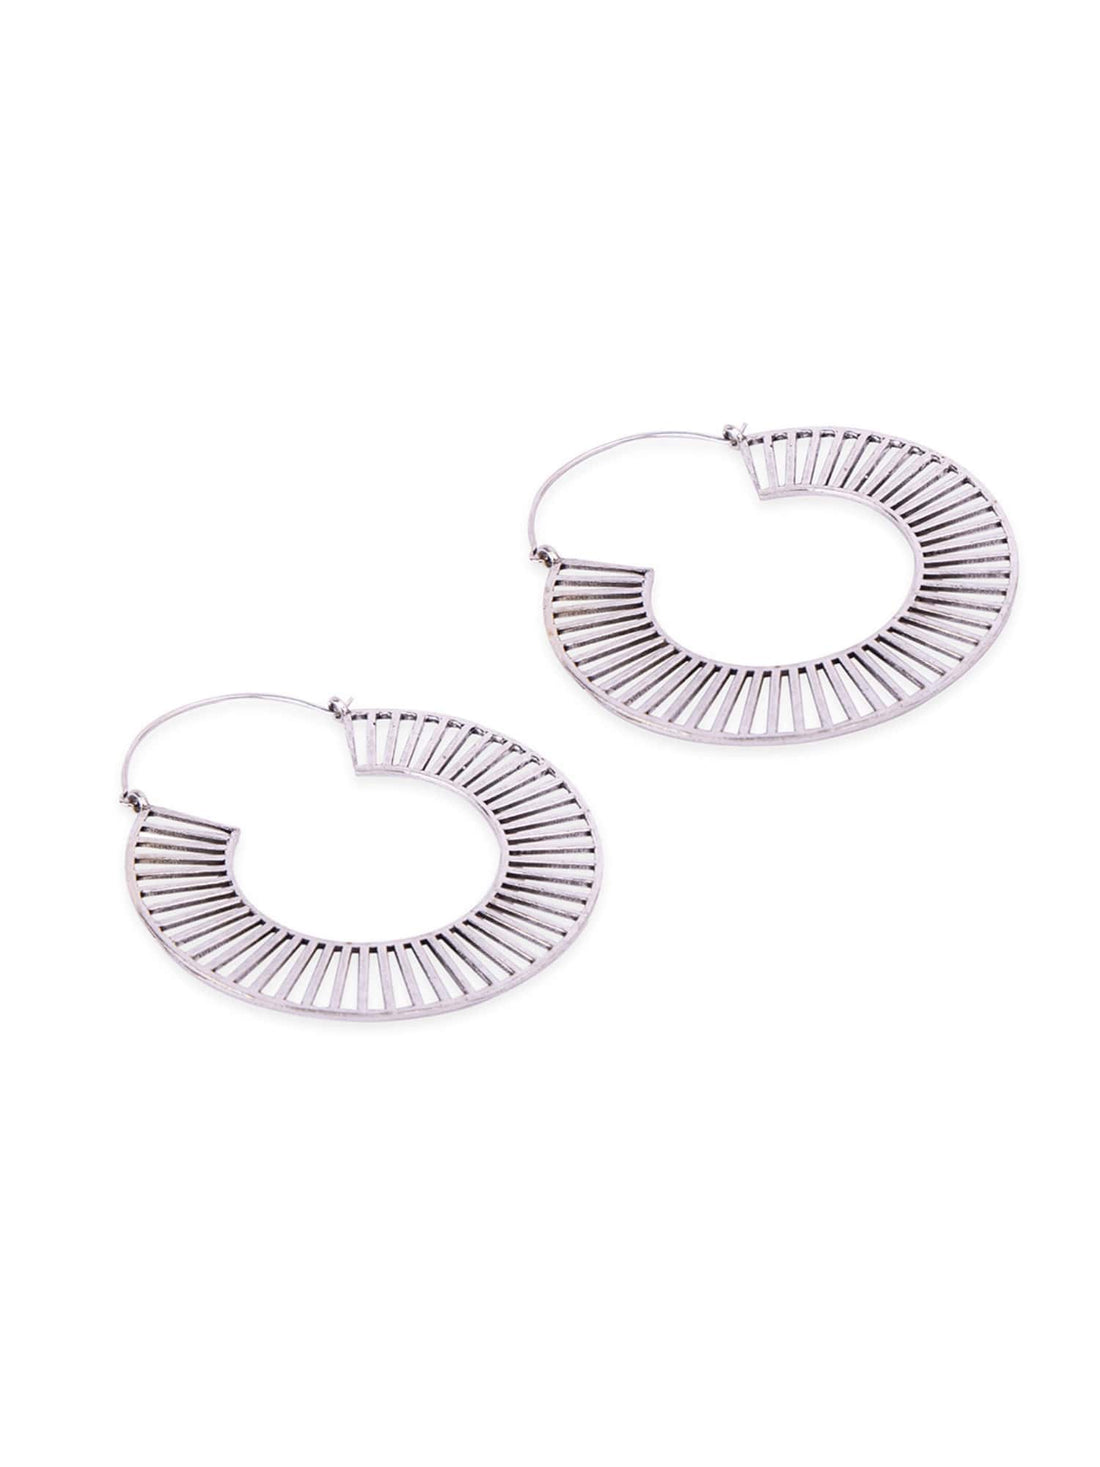 Party Wear Hoops Earrings - Statement Silver-Plated Brass Earrings By Studio One Love